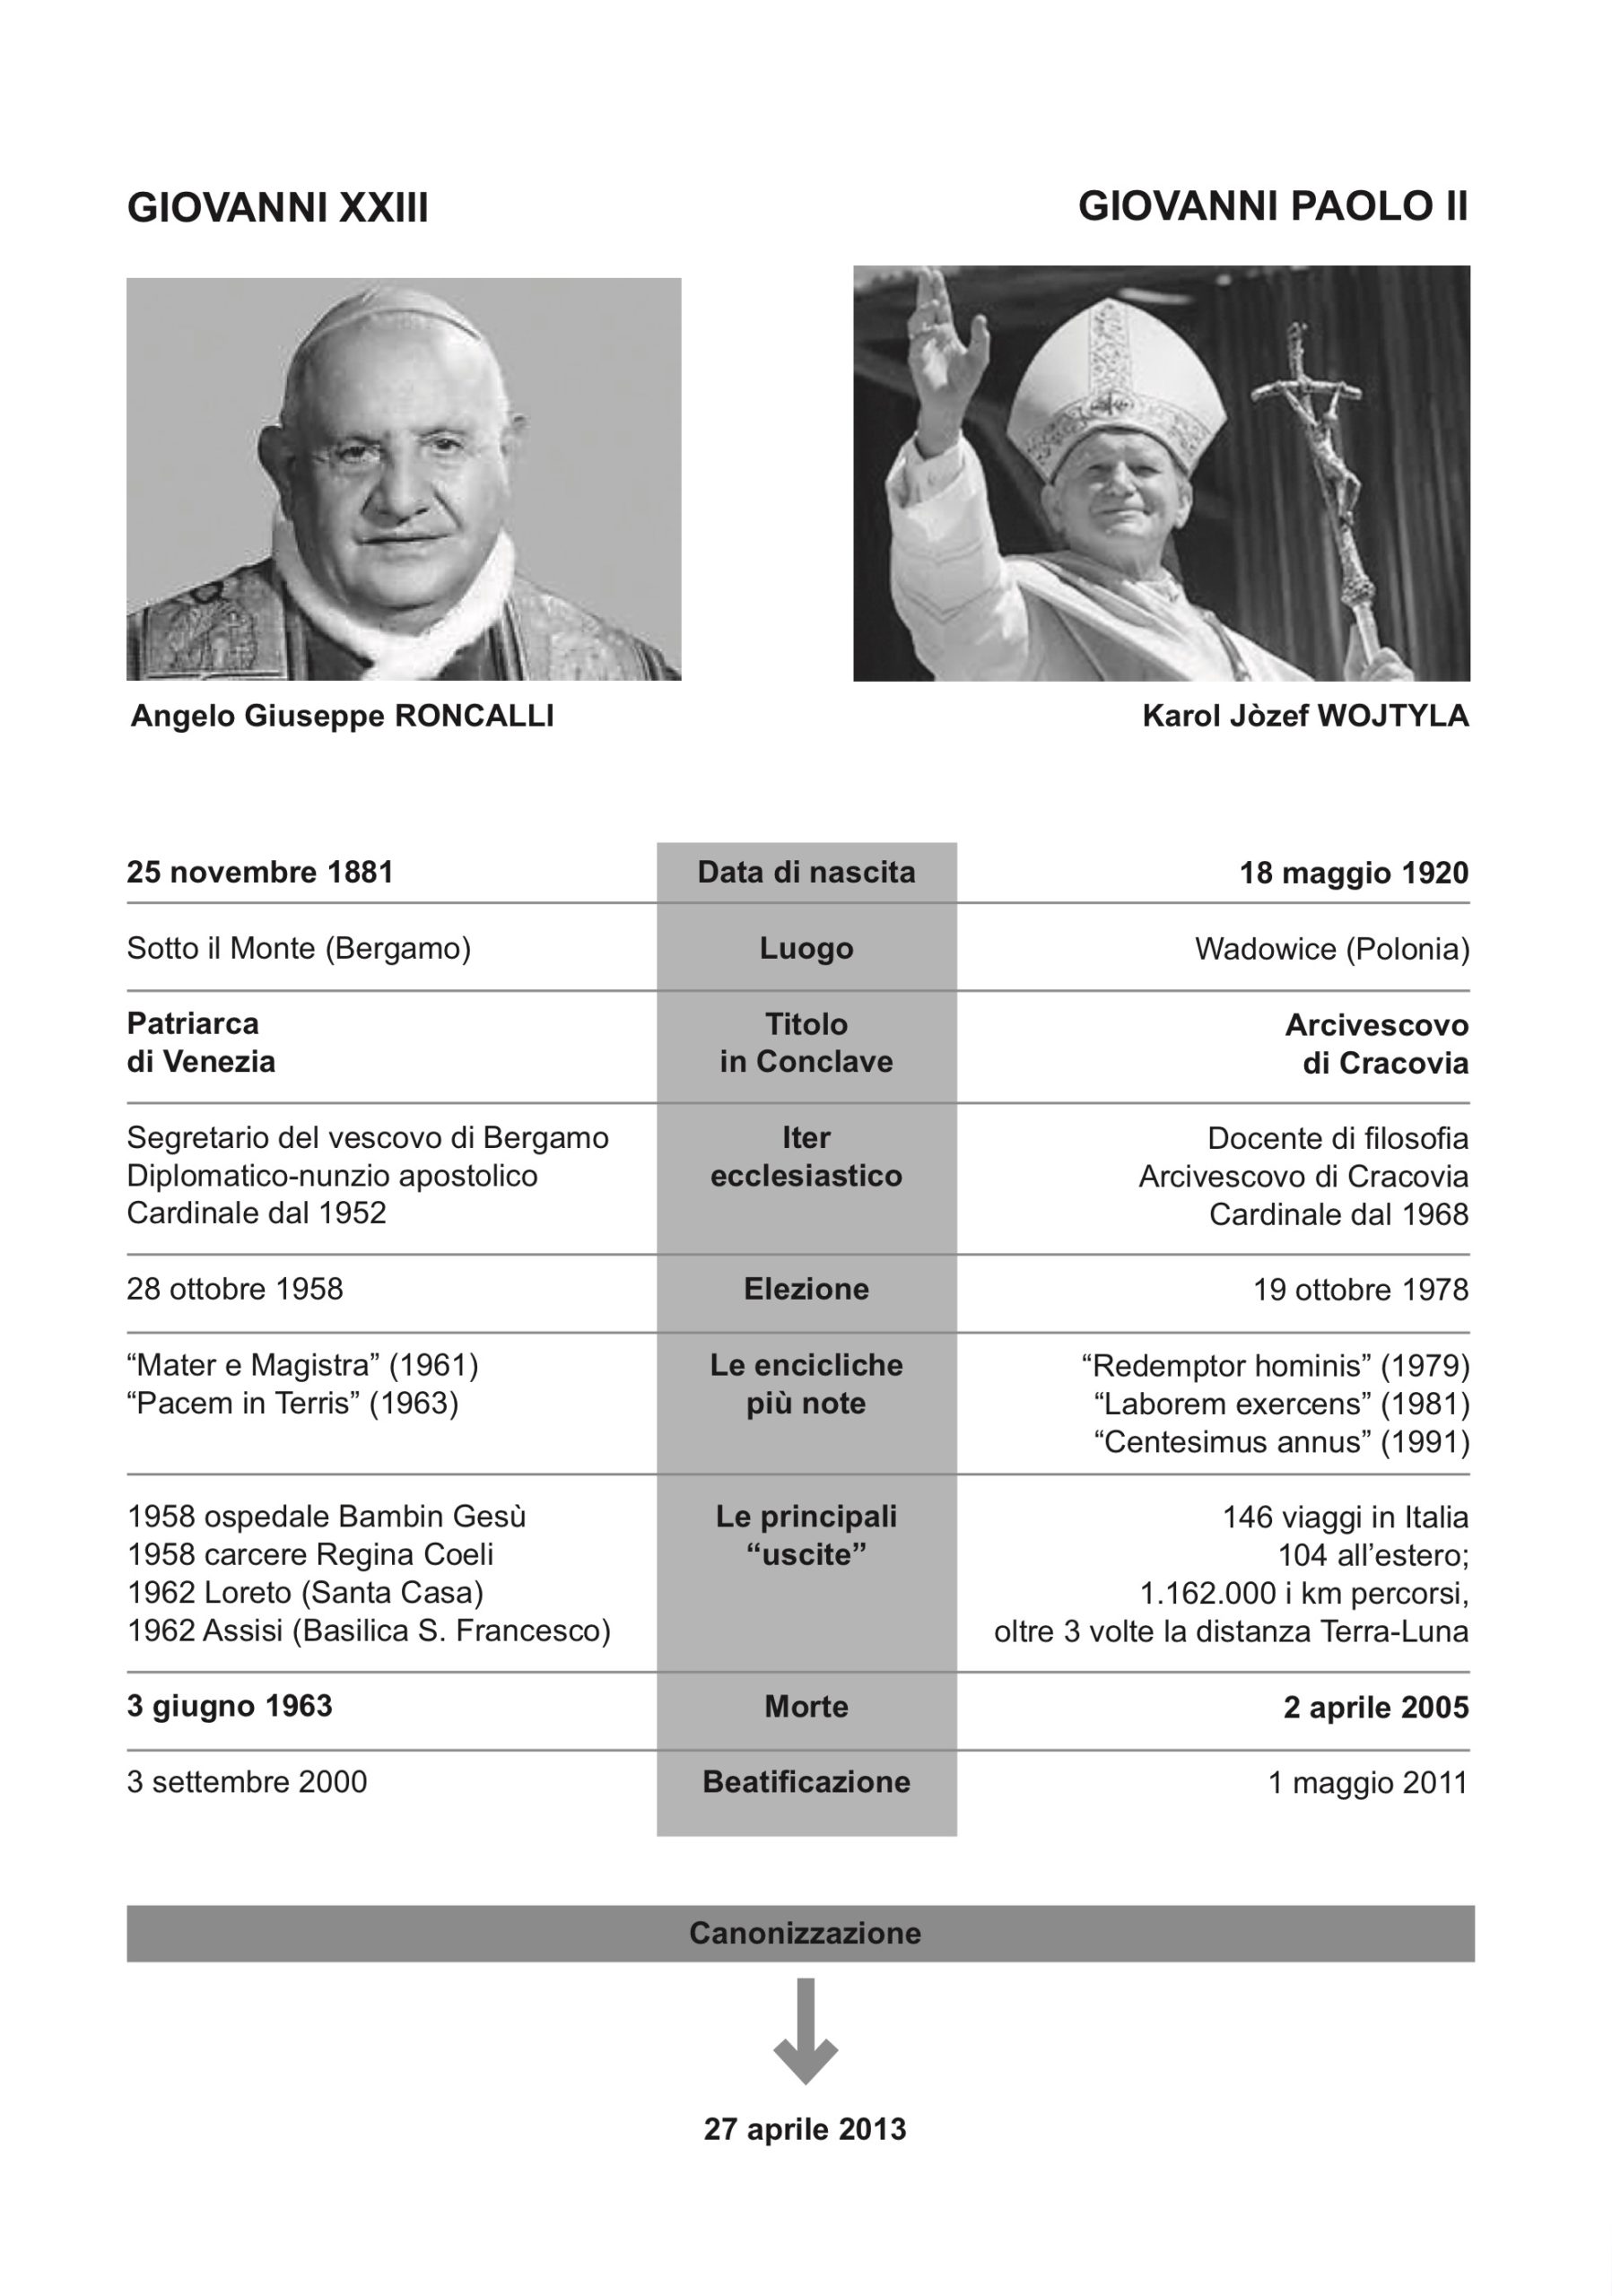 Giovanni XXIII e GP II